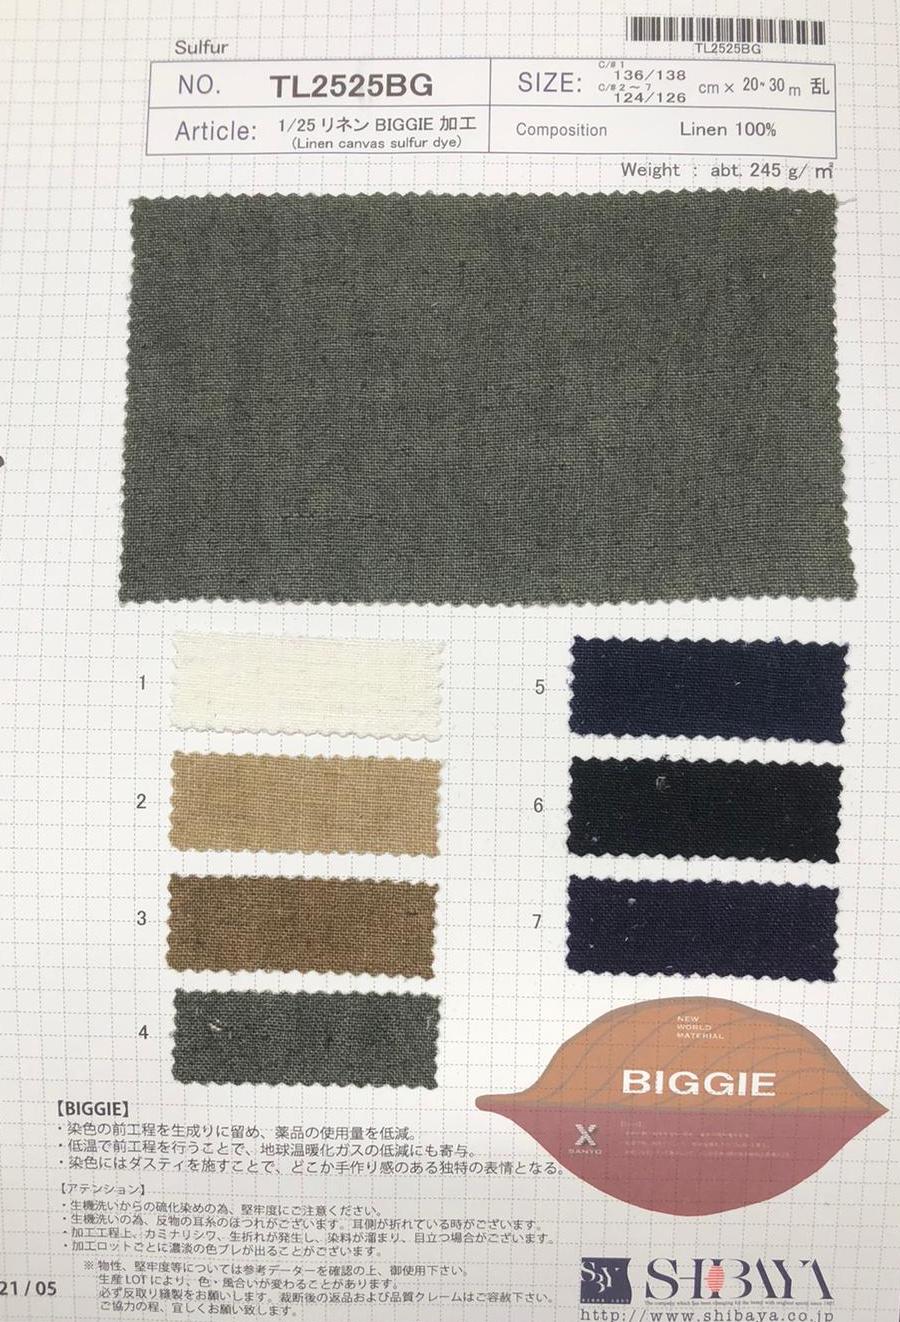 TL2525BG 1/25 Linen BIGGIE Processing[Textile / Fabric] SHIBAYA